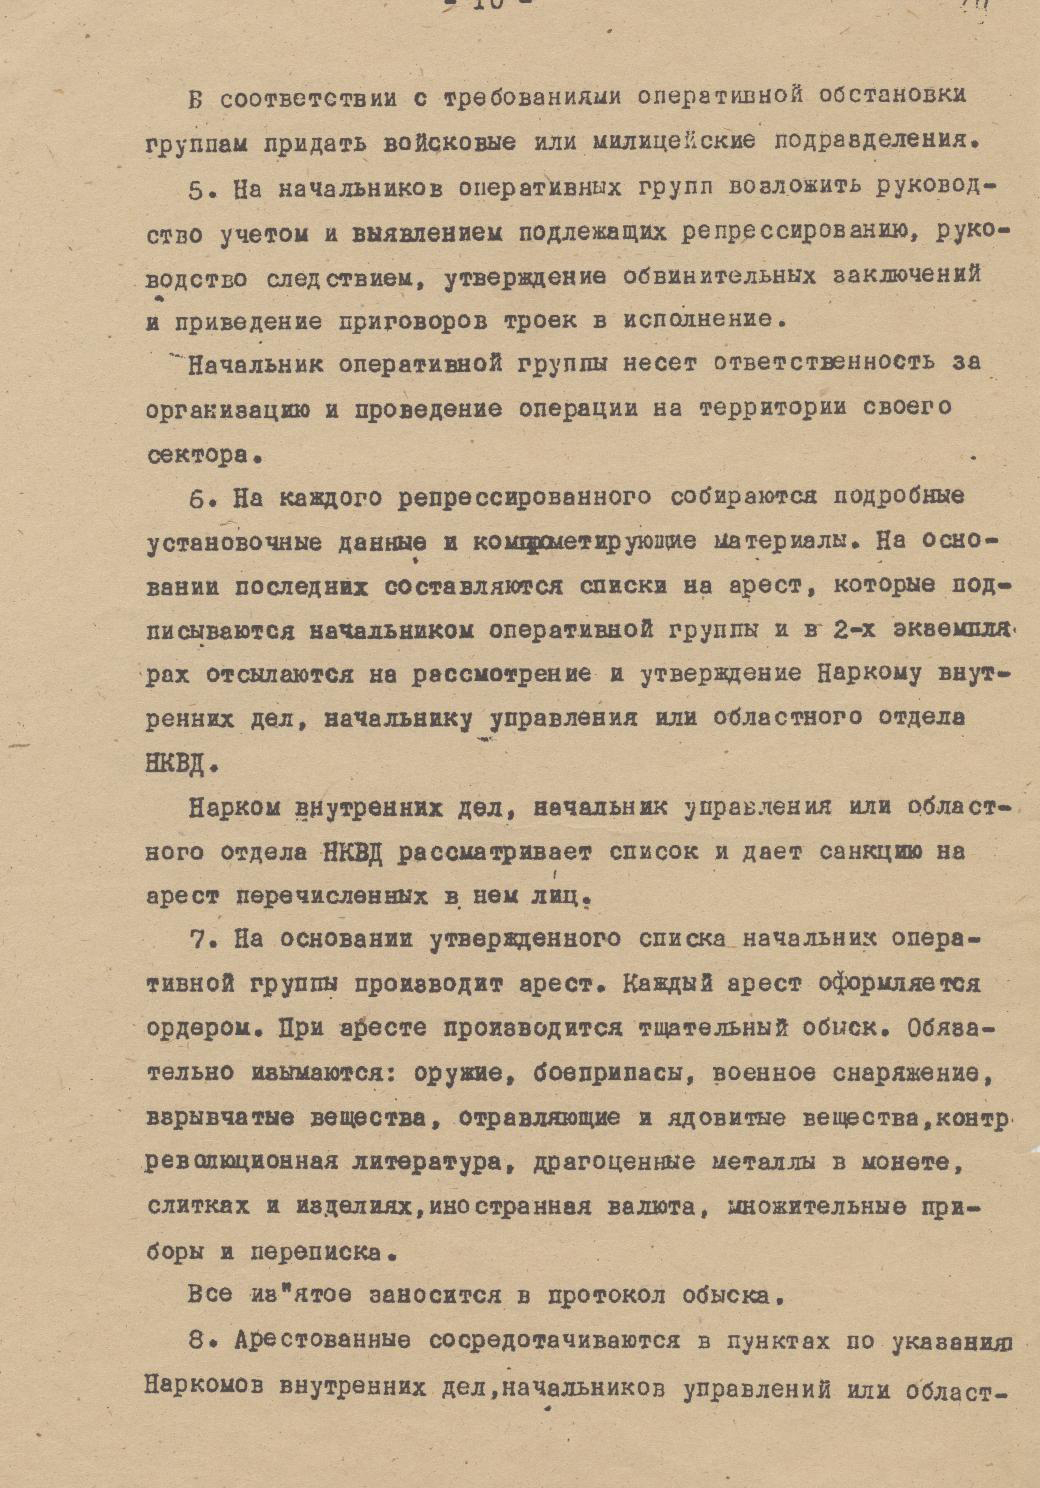 Оперативный приказ 00447. Приказ 00447 НКВД СССР от 30 июля 1937 года. Приказ об операции по репрессированию.